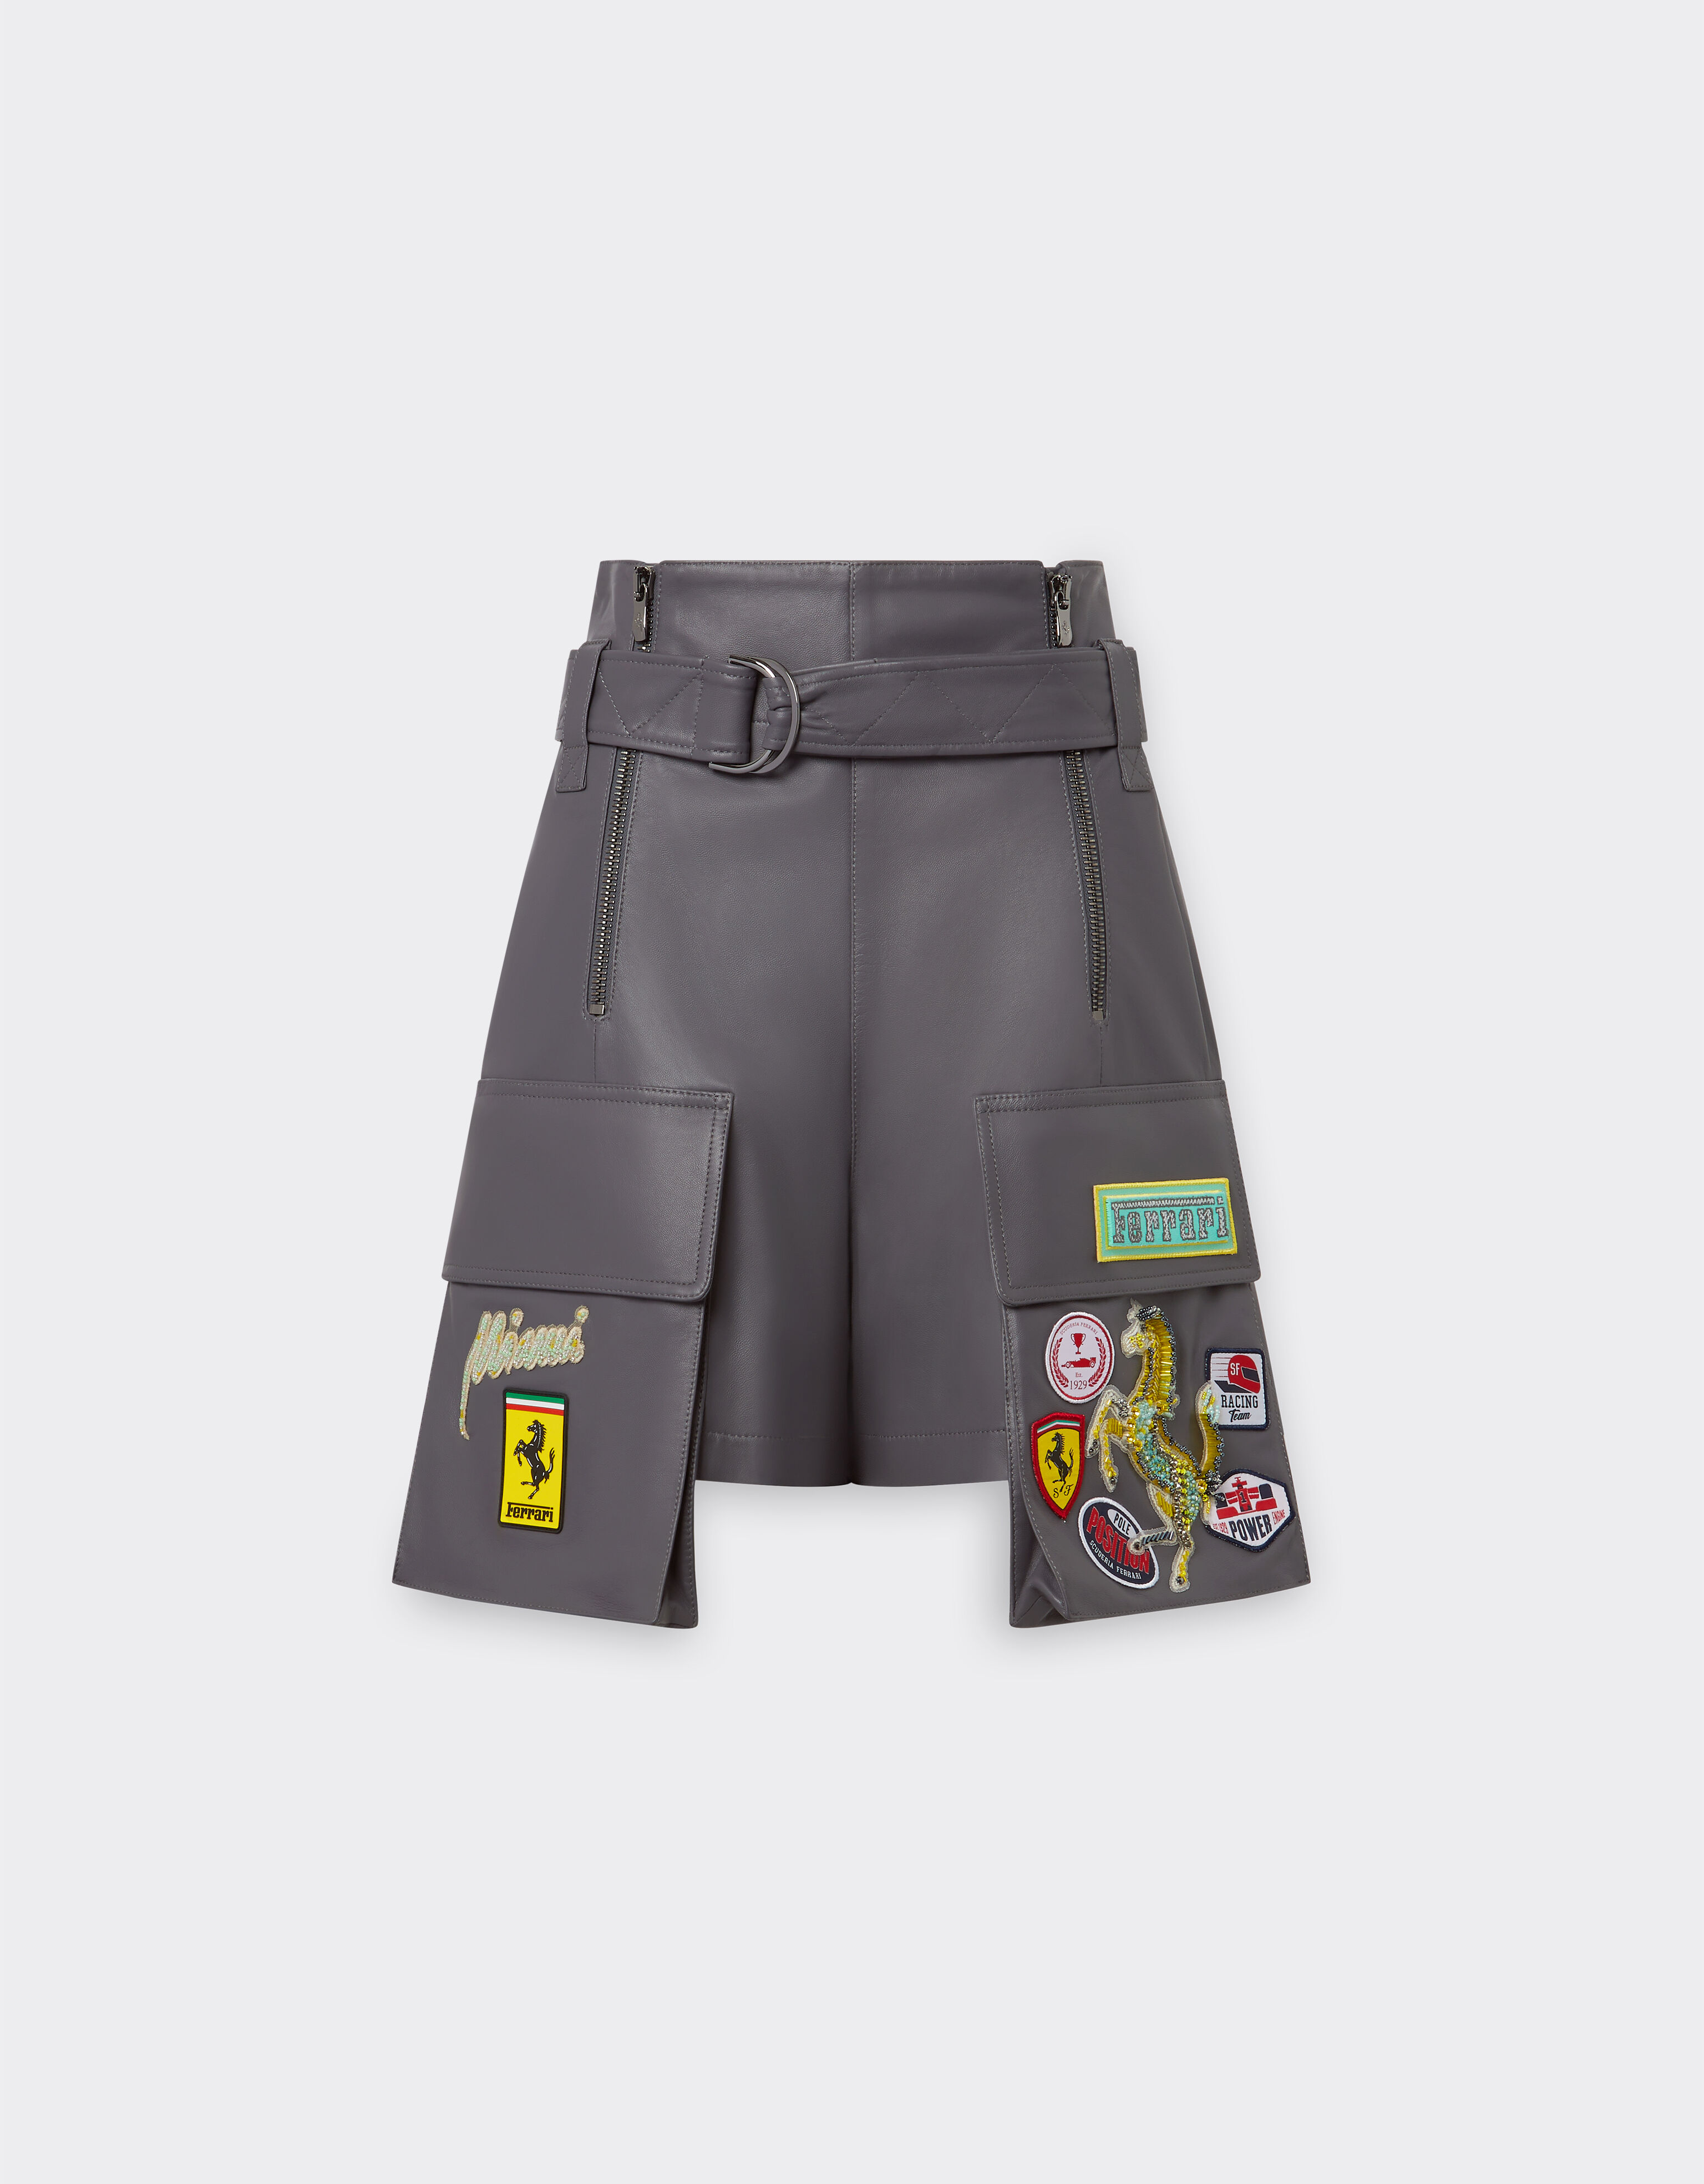 Ferrari Miami Collection shorts in nappa leather Aquamarine 21229f